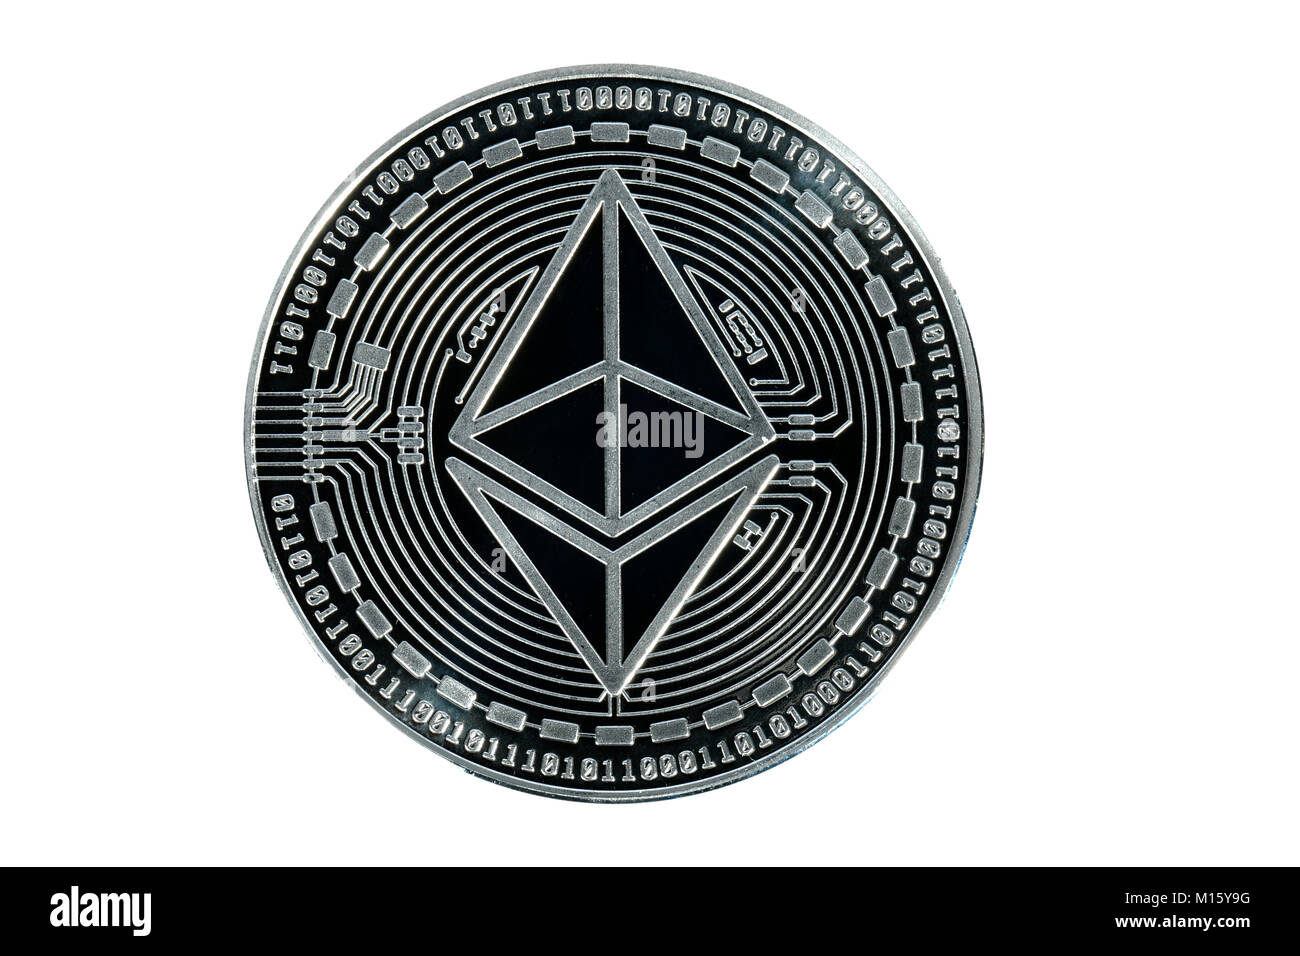 Photo symbole Cryptocurrency,la monnaie numérique,découpe,Ethereum pièce d'argent Banque D'Images